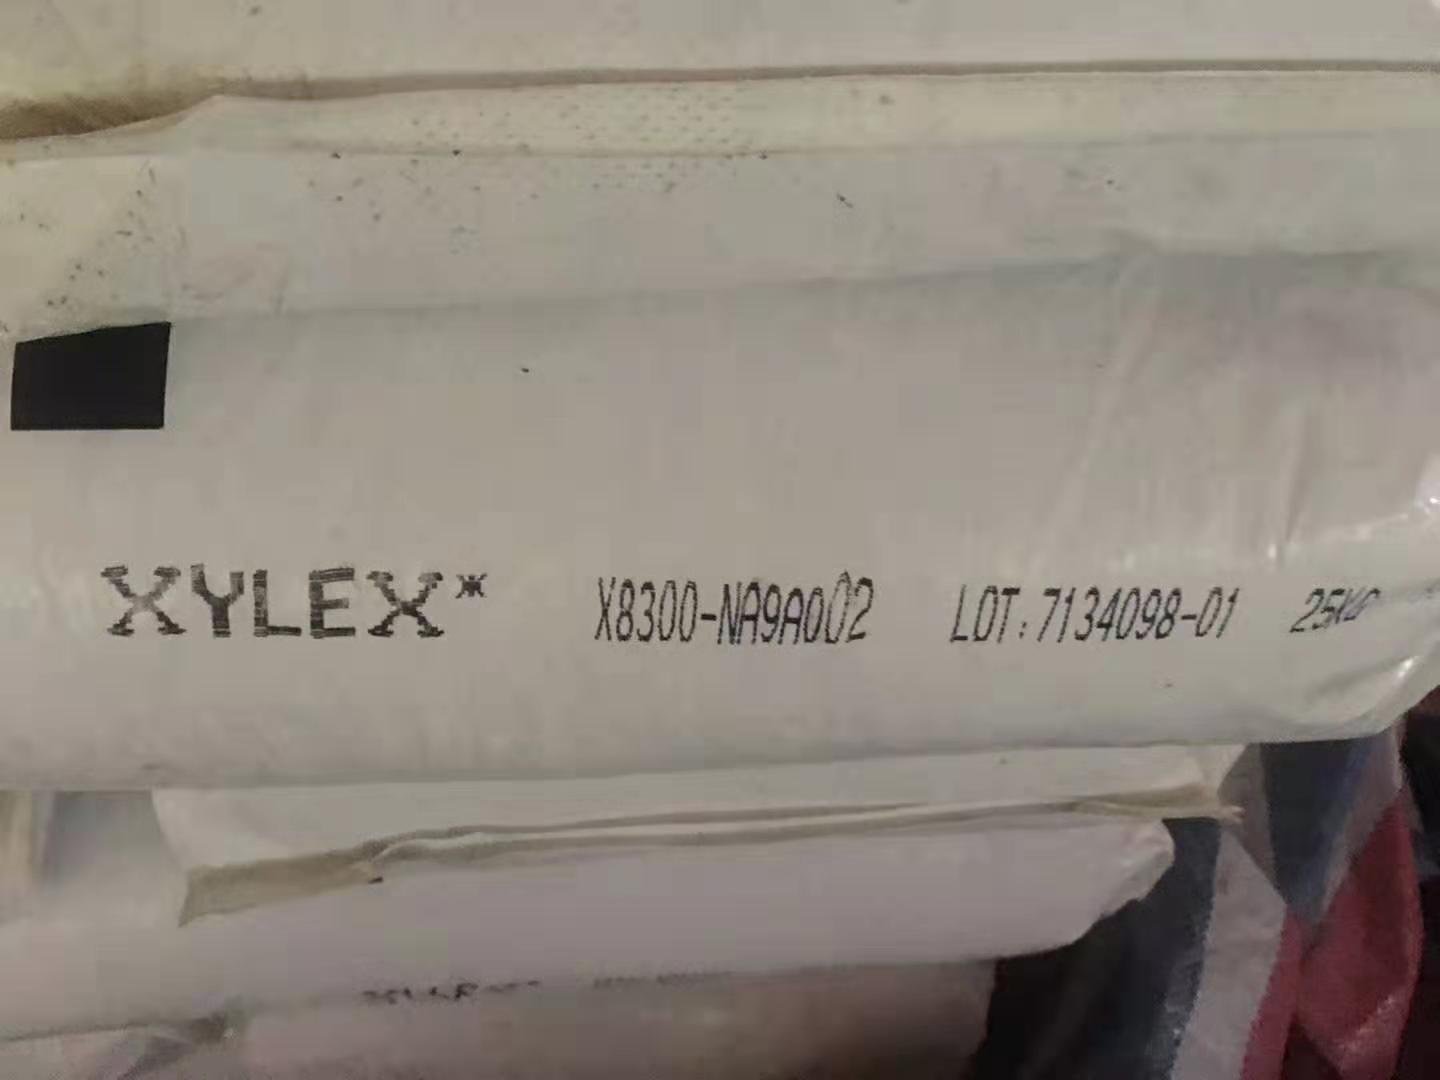 Xylex X8300-NA9A002